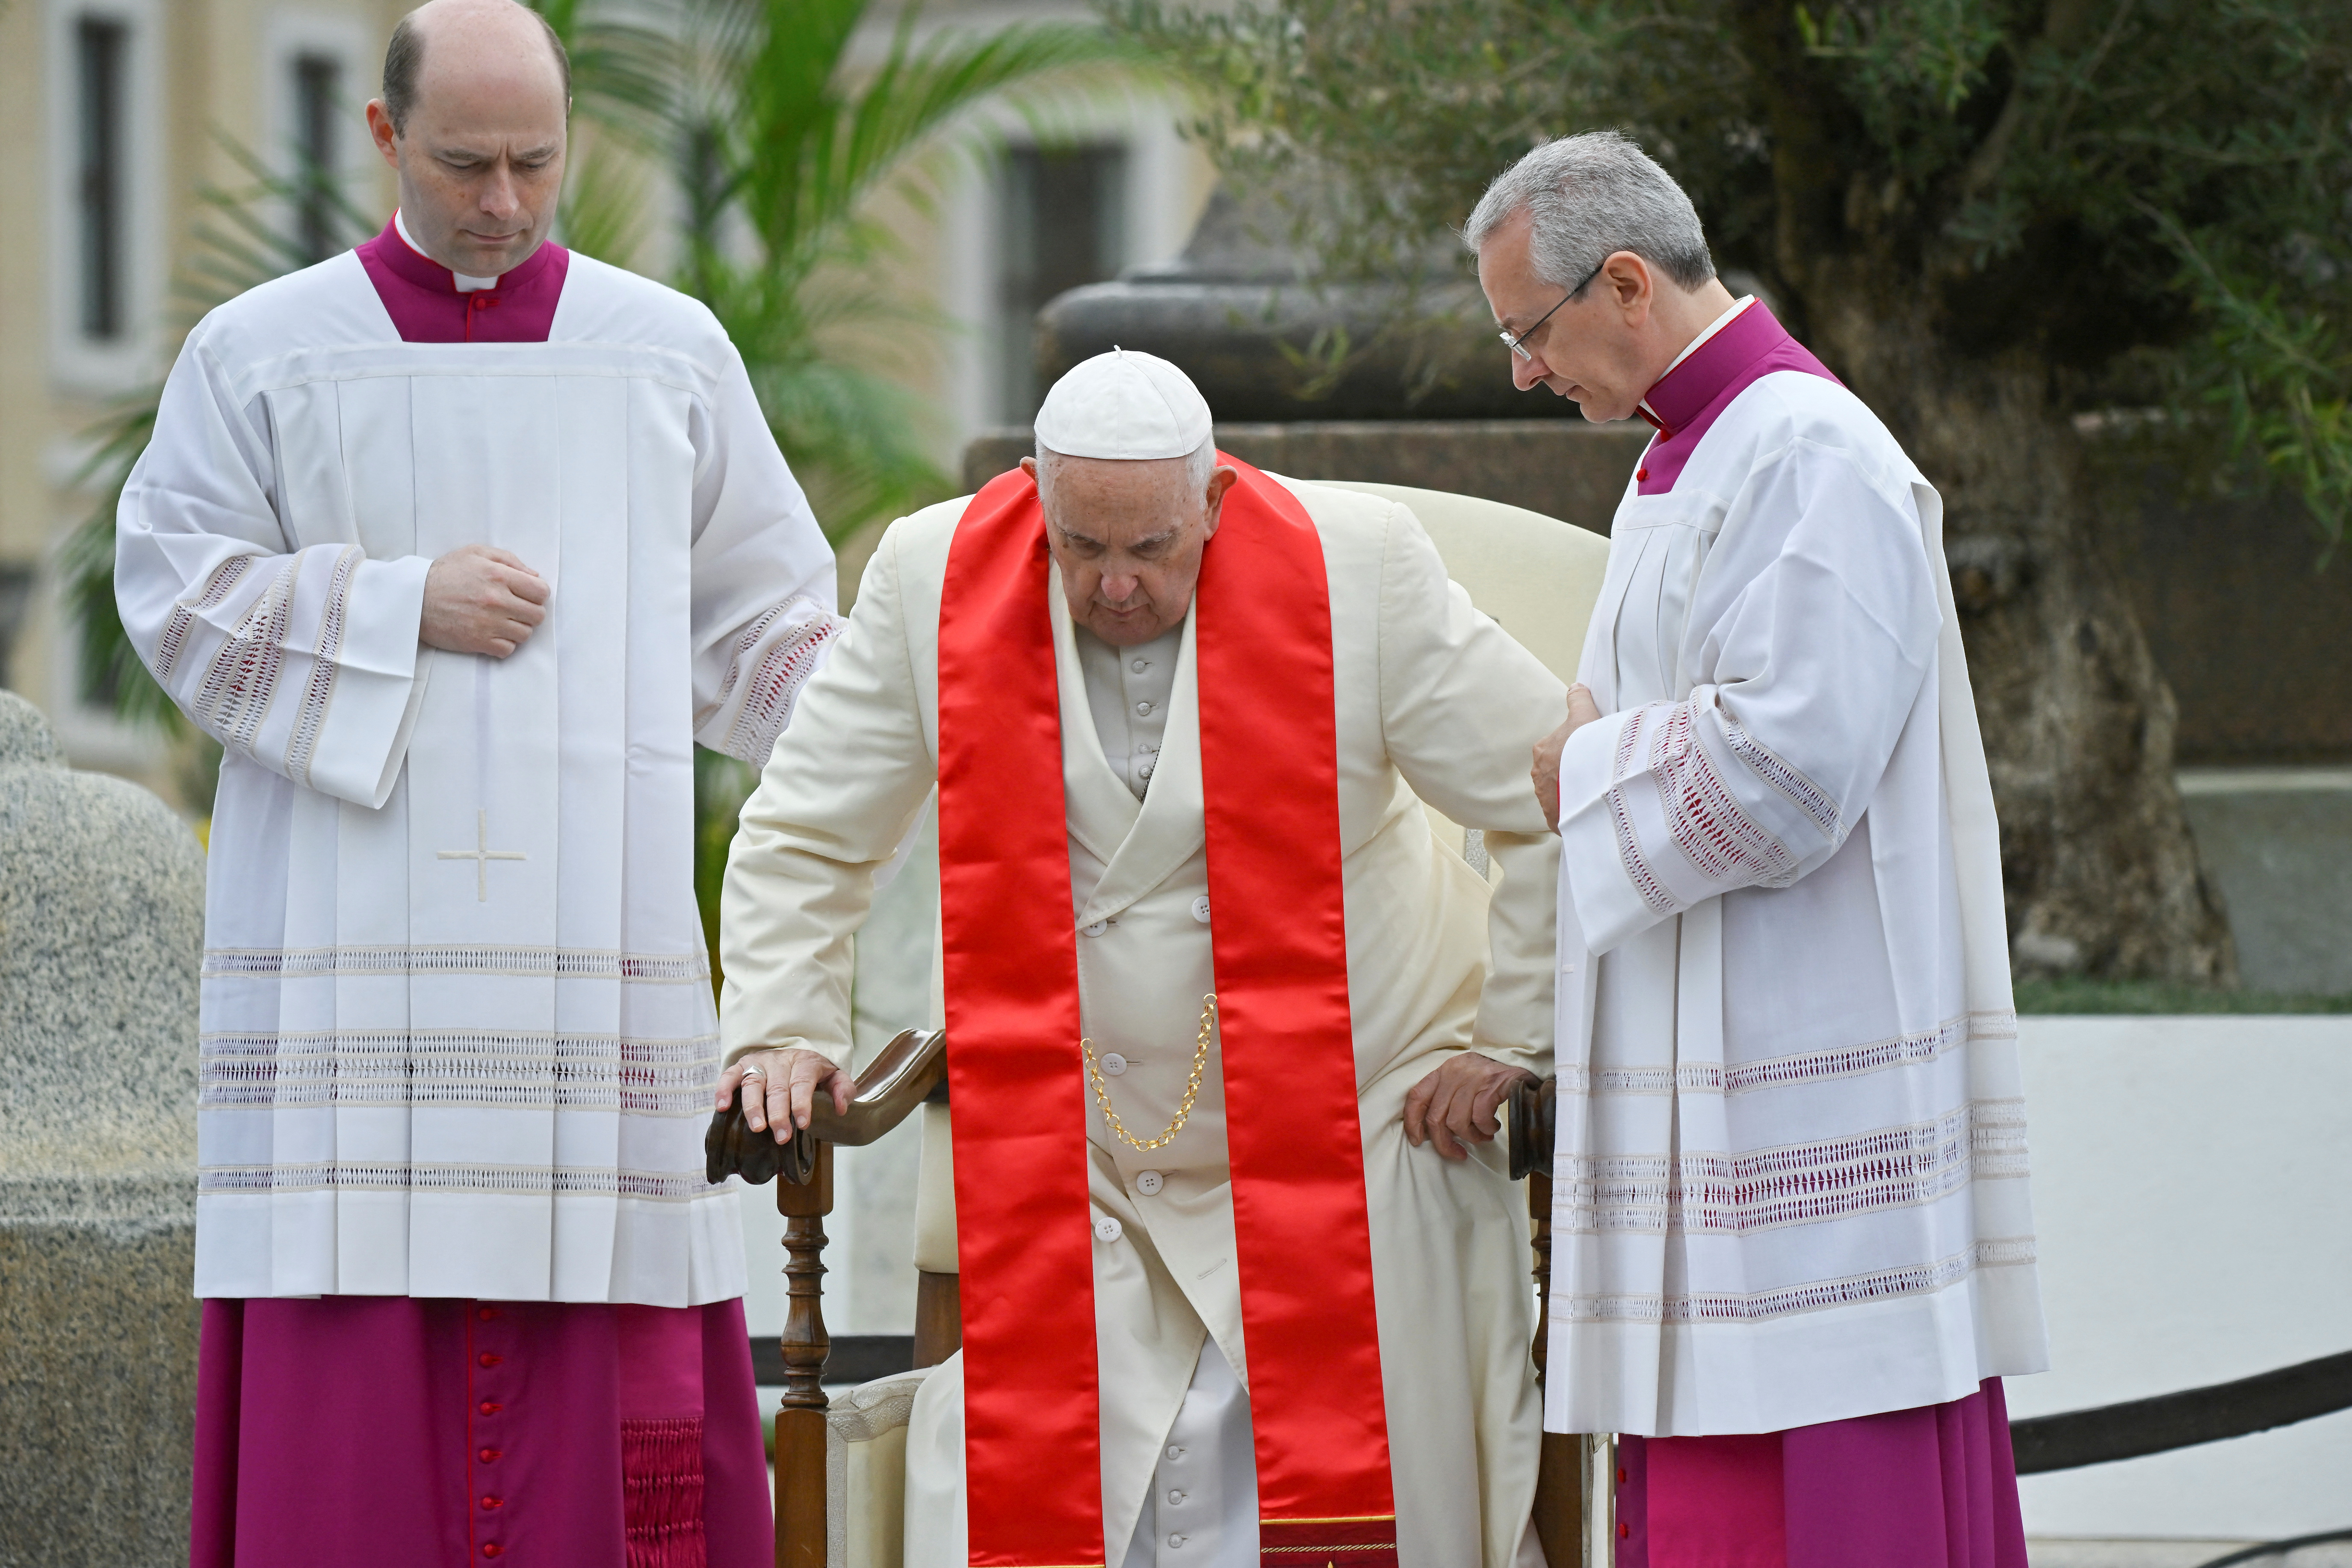 El Papa recibe ayuda para tomar asiento en la misa (via Reuters)